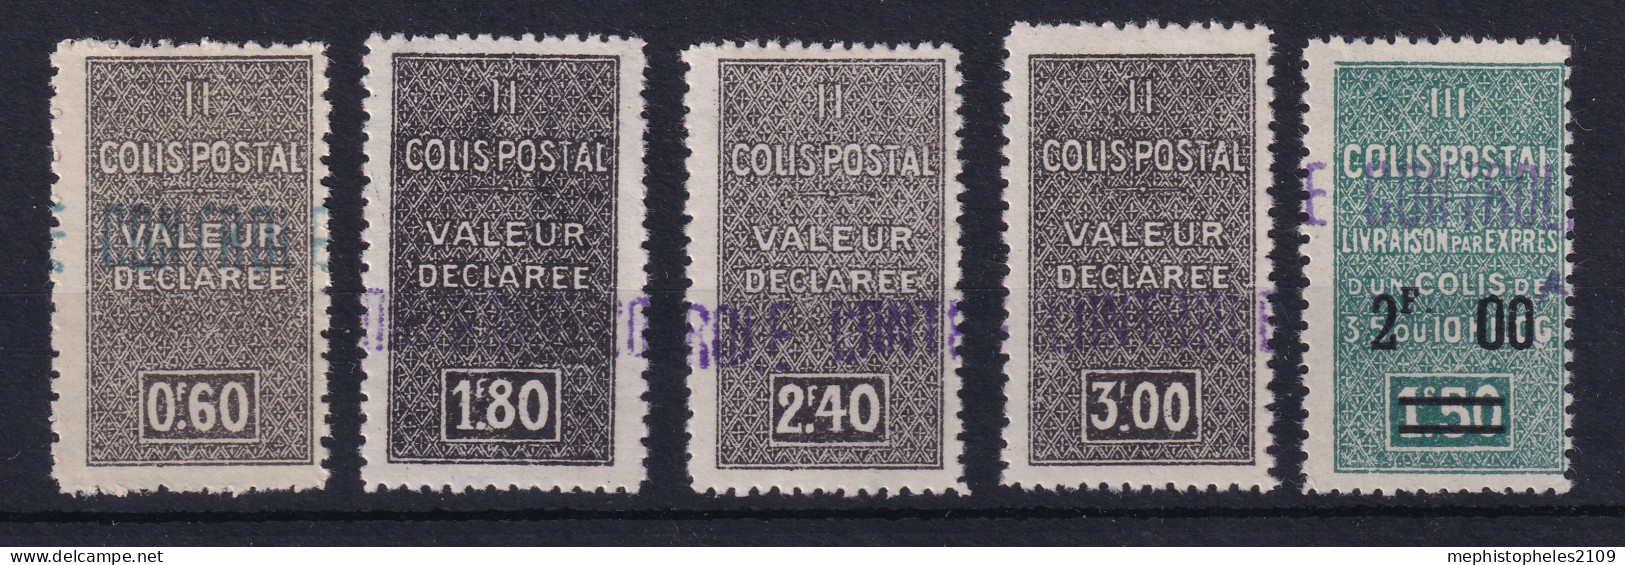 ALGÉRIE 1939 - MLH - YT 55, 56, 57, 58, 59 - COLIS POSTAUX - Paketmarken